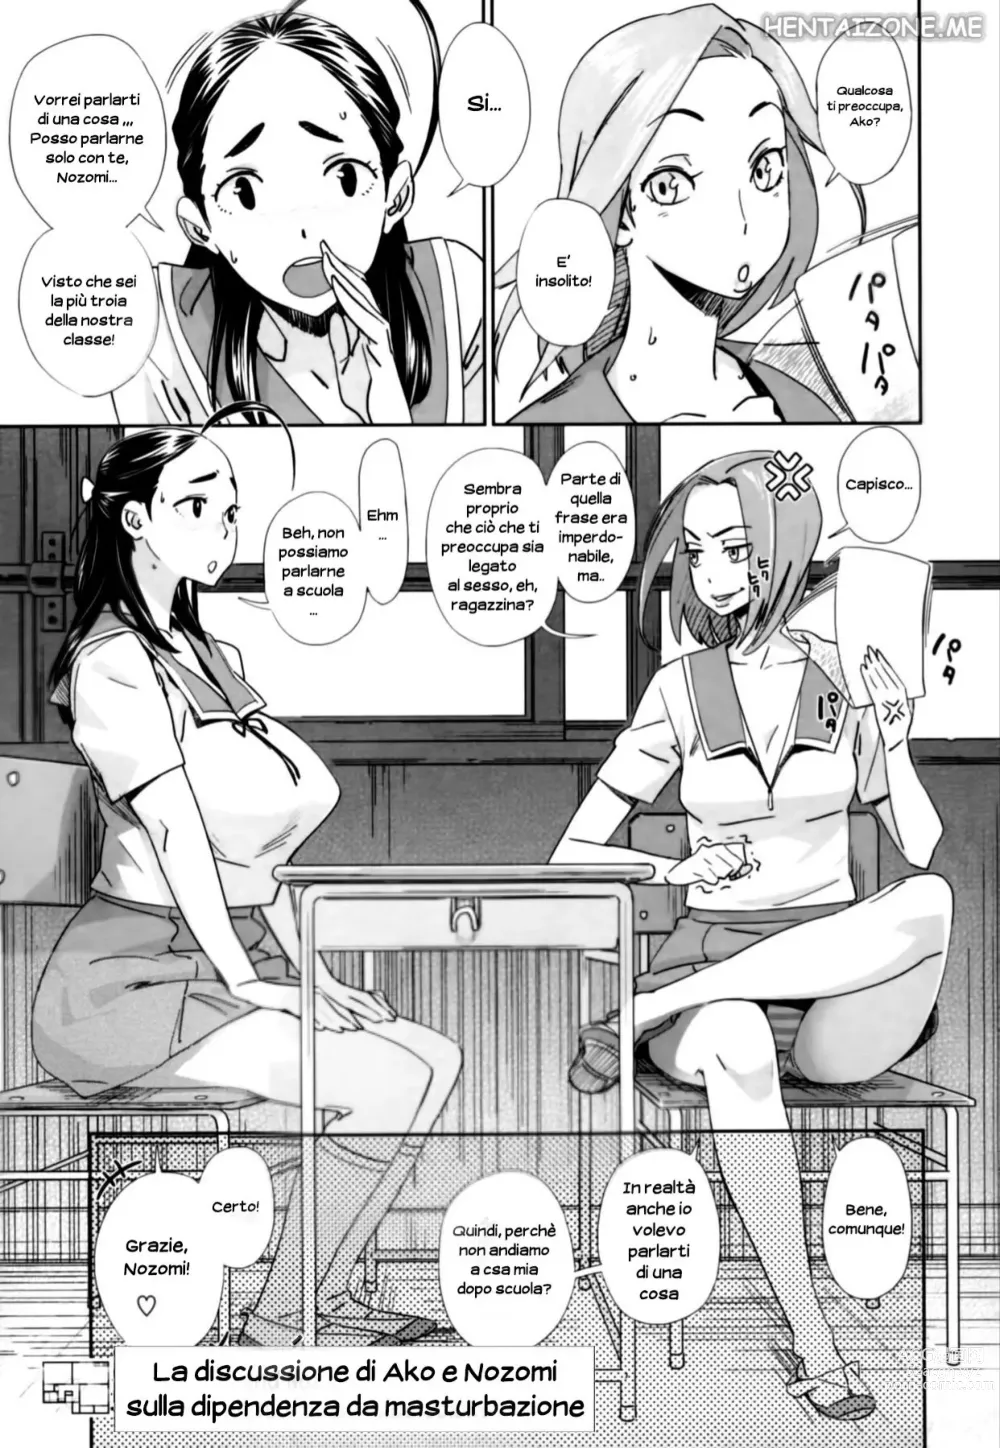 Page 1 of manga La Discussione di Ako e Nozomi sulla Dipendenza da Masturbazione (decensored)